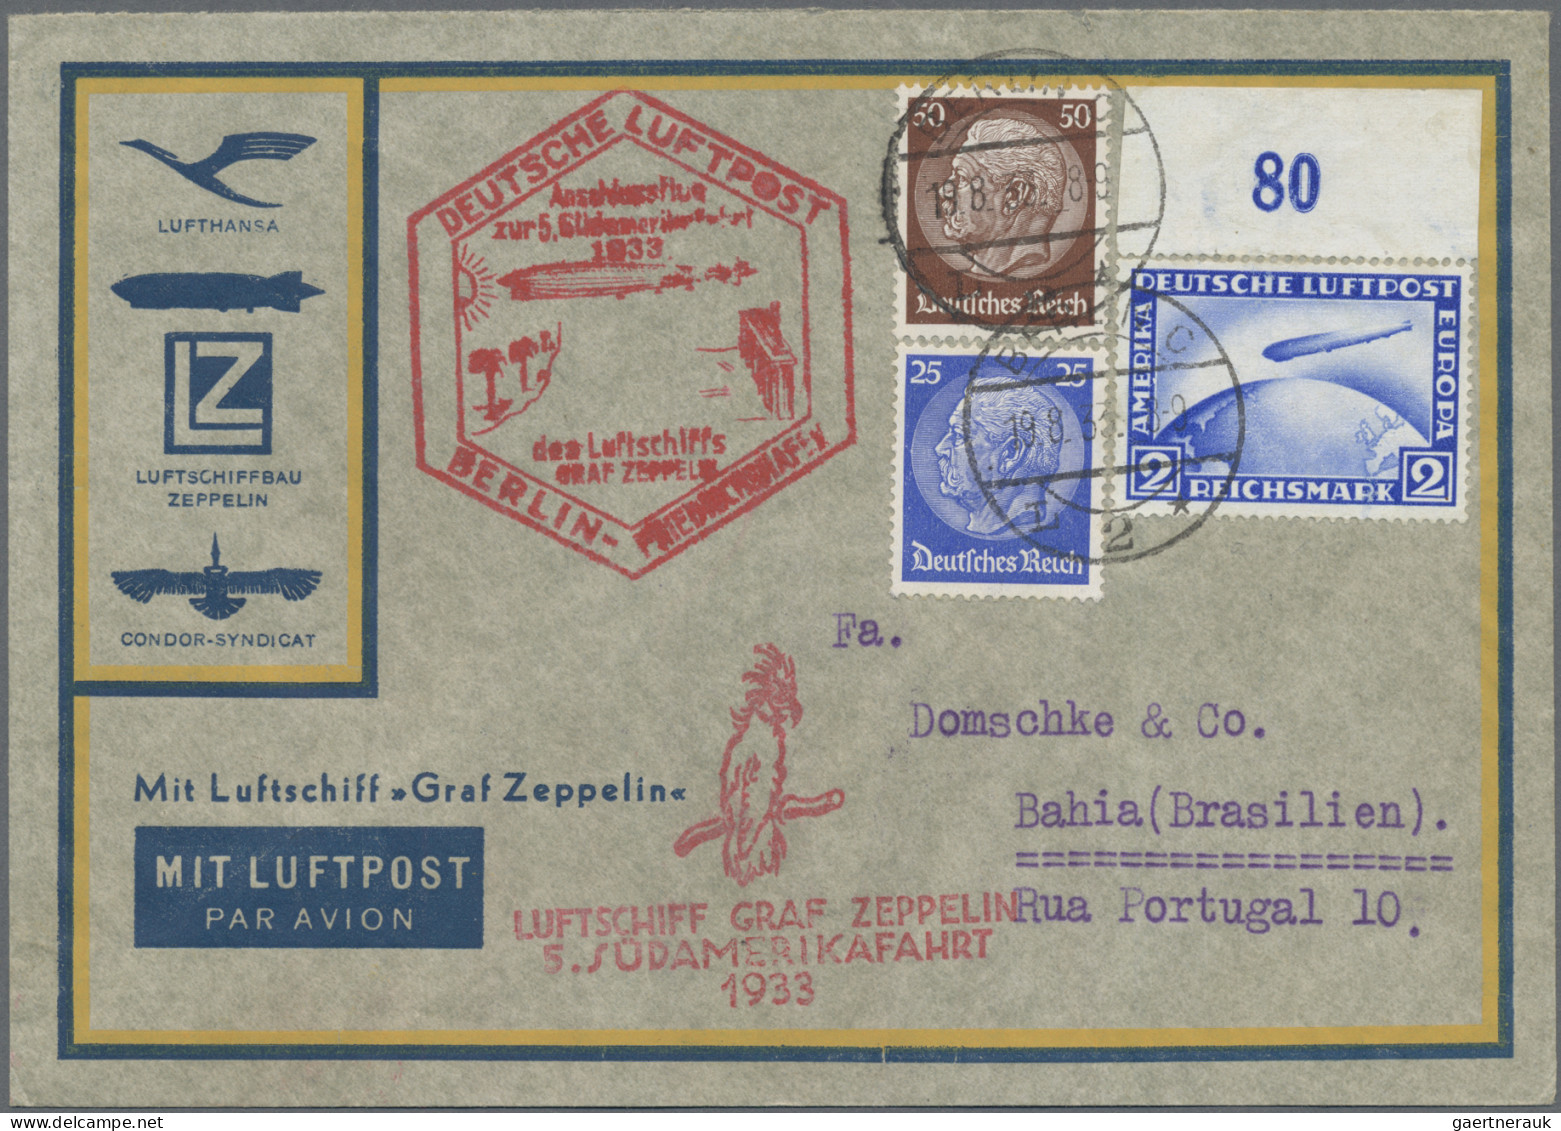 Zeppelin Mail - Germany: 1933 (19.8.), Luftpostumschlag Mit 2 RM Zeppelin Und Zu - Airmail & Zeppelin